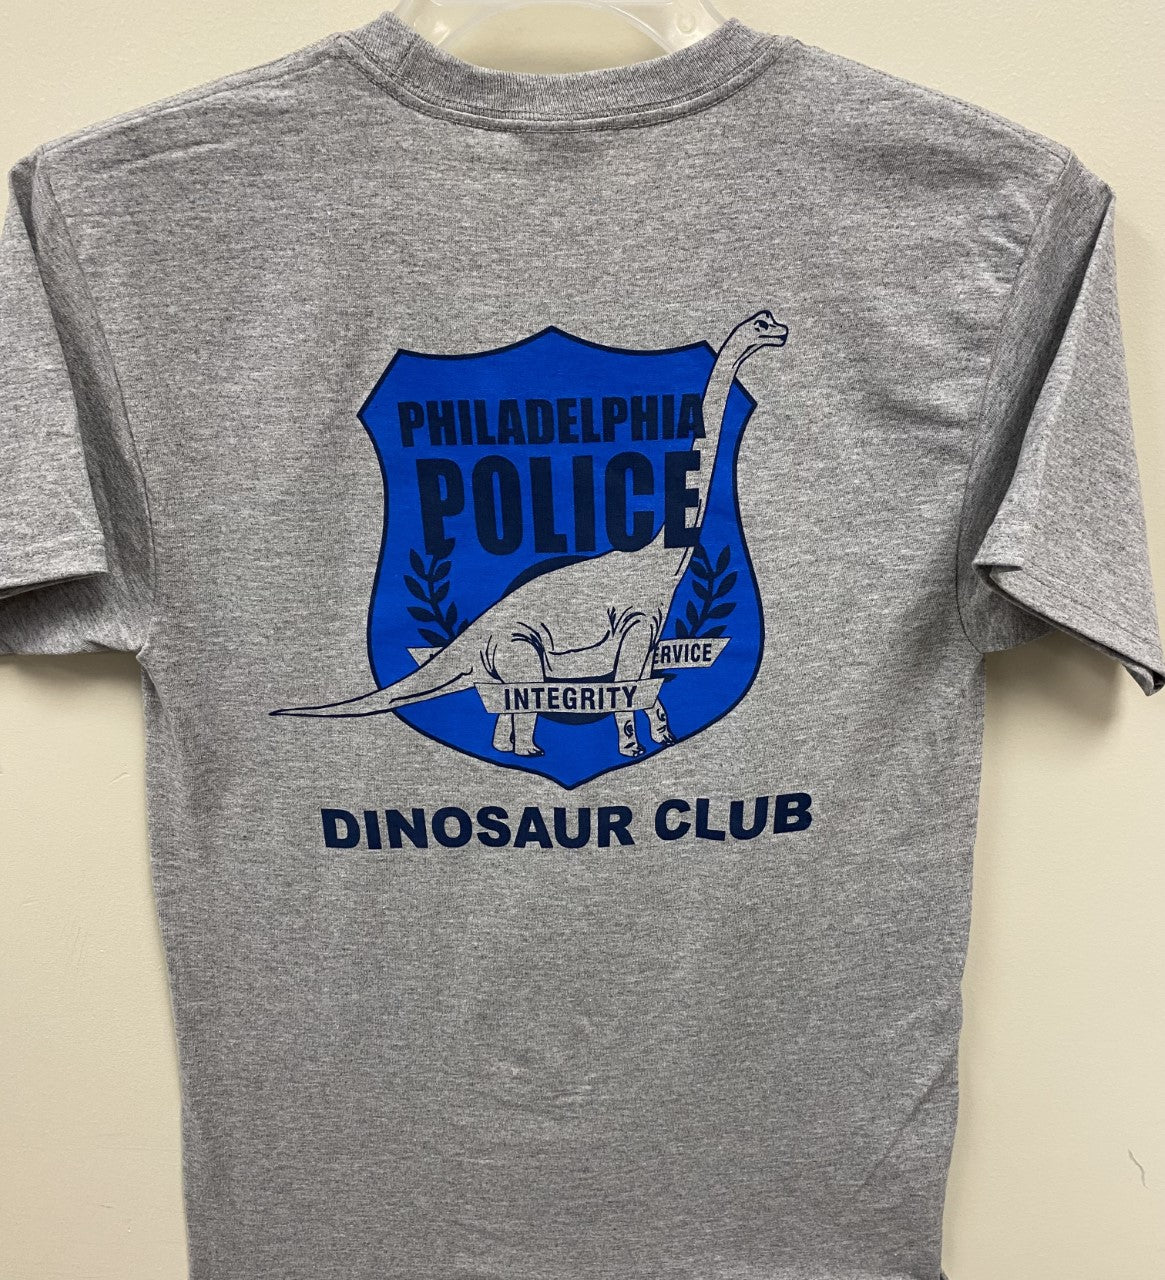 Dinosaur Club T-shirt